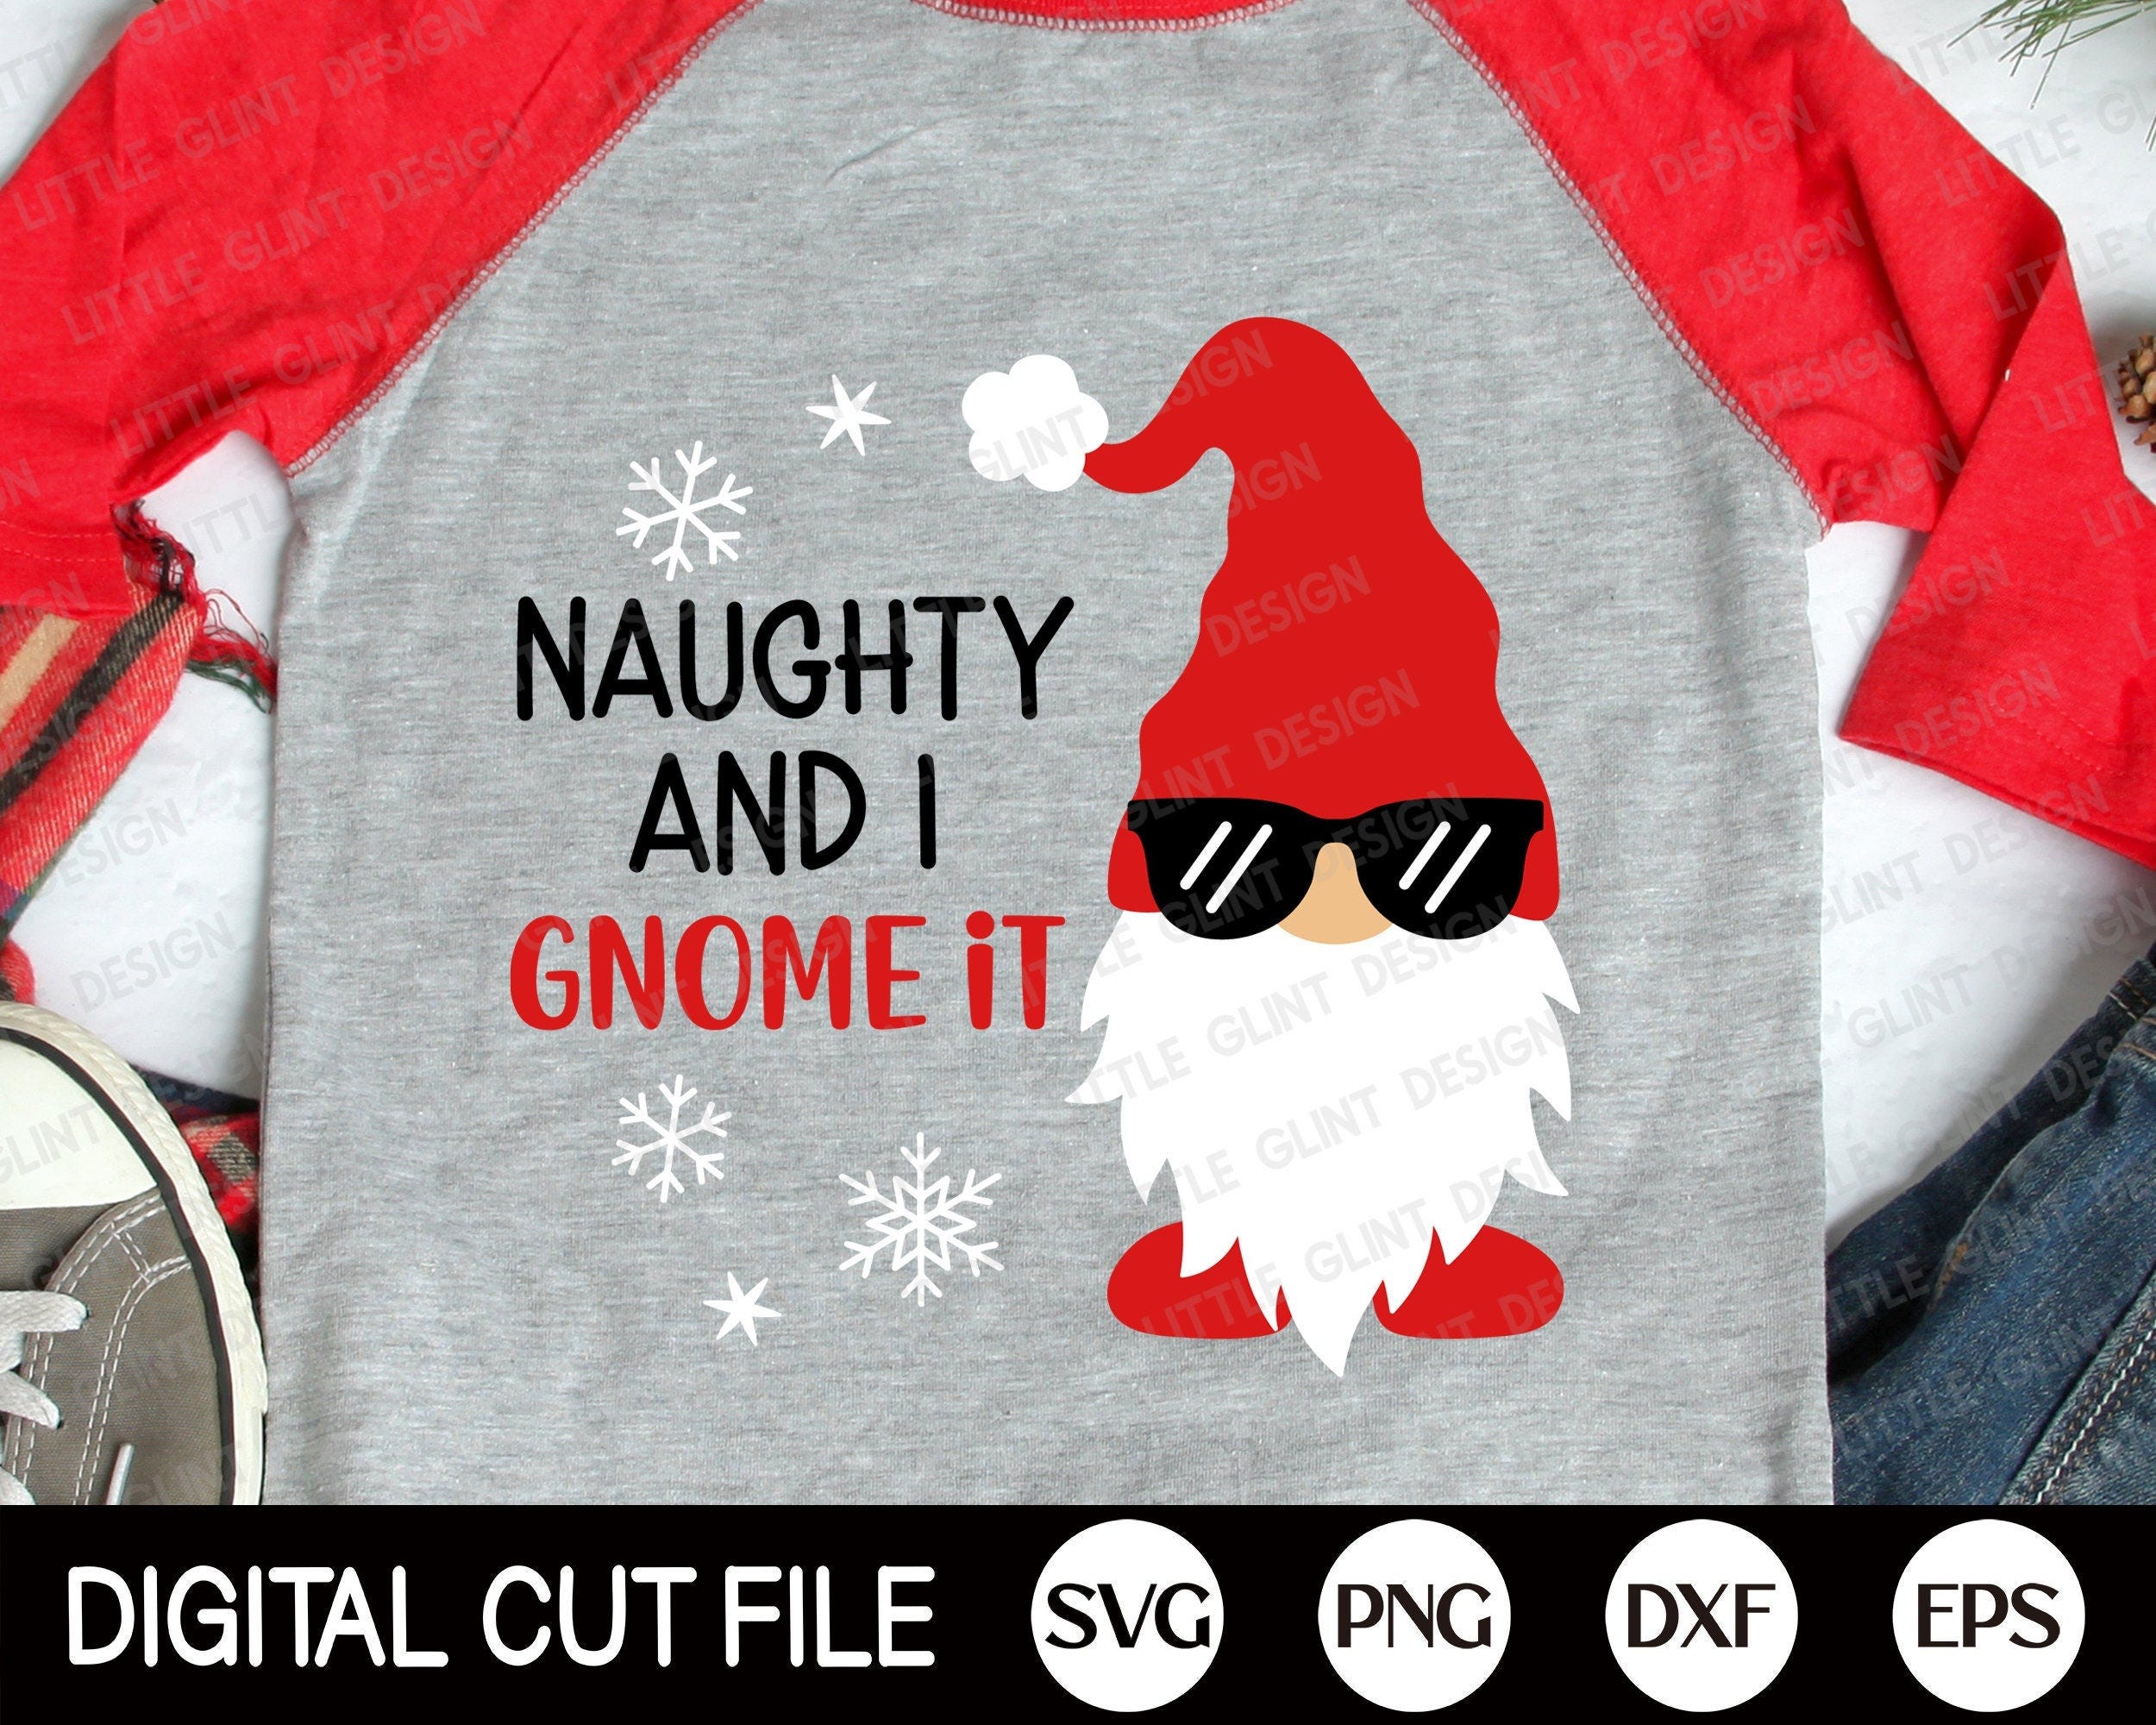 Christmas Gnome SVG, Naughty and I gnome it Svg, Christmas SVG, Gnome Svg, Gnomes Png, Holiday Gnomie, Christmas Shirt, Svg Files for Cricut